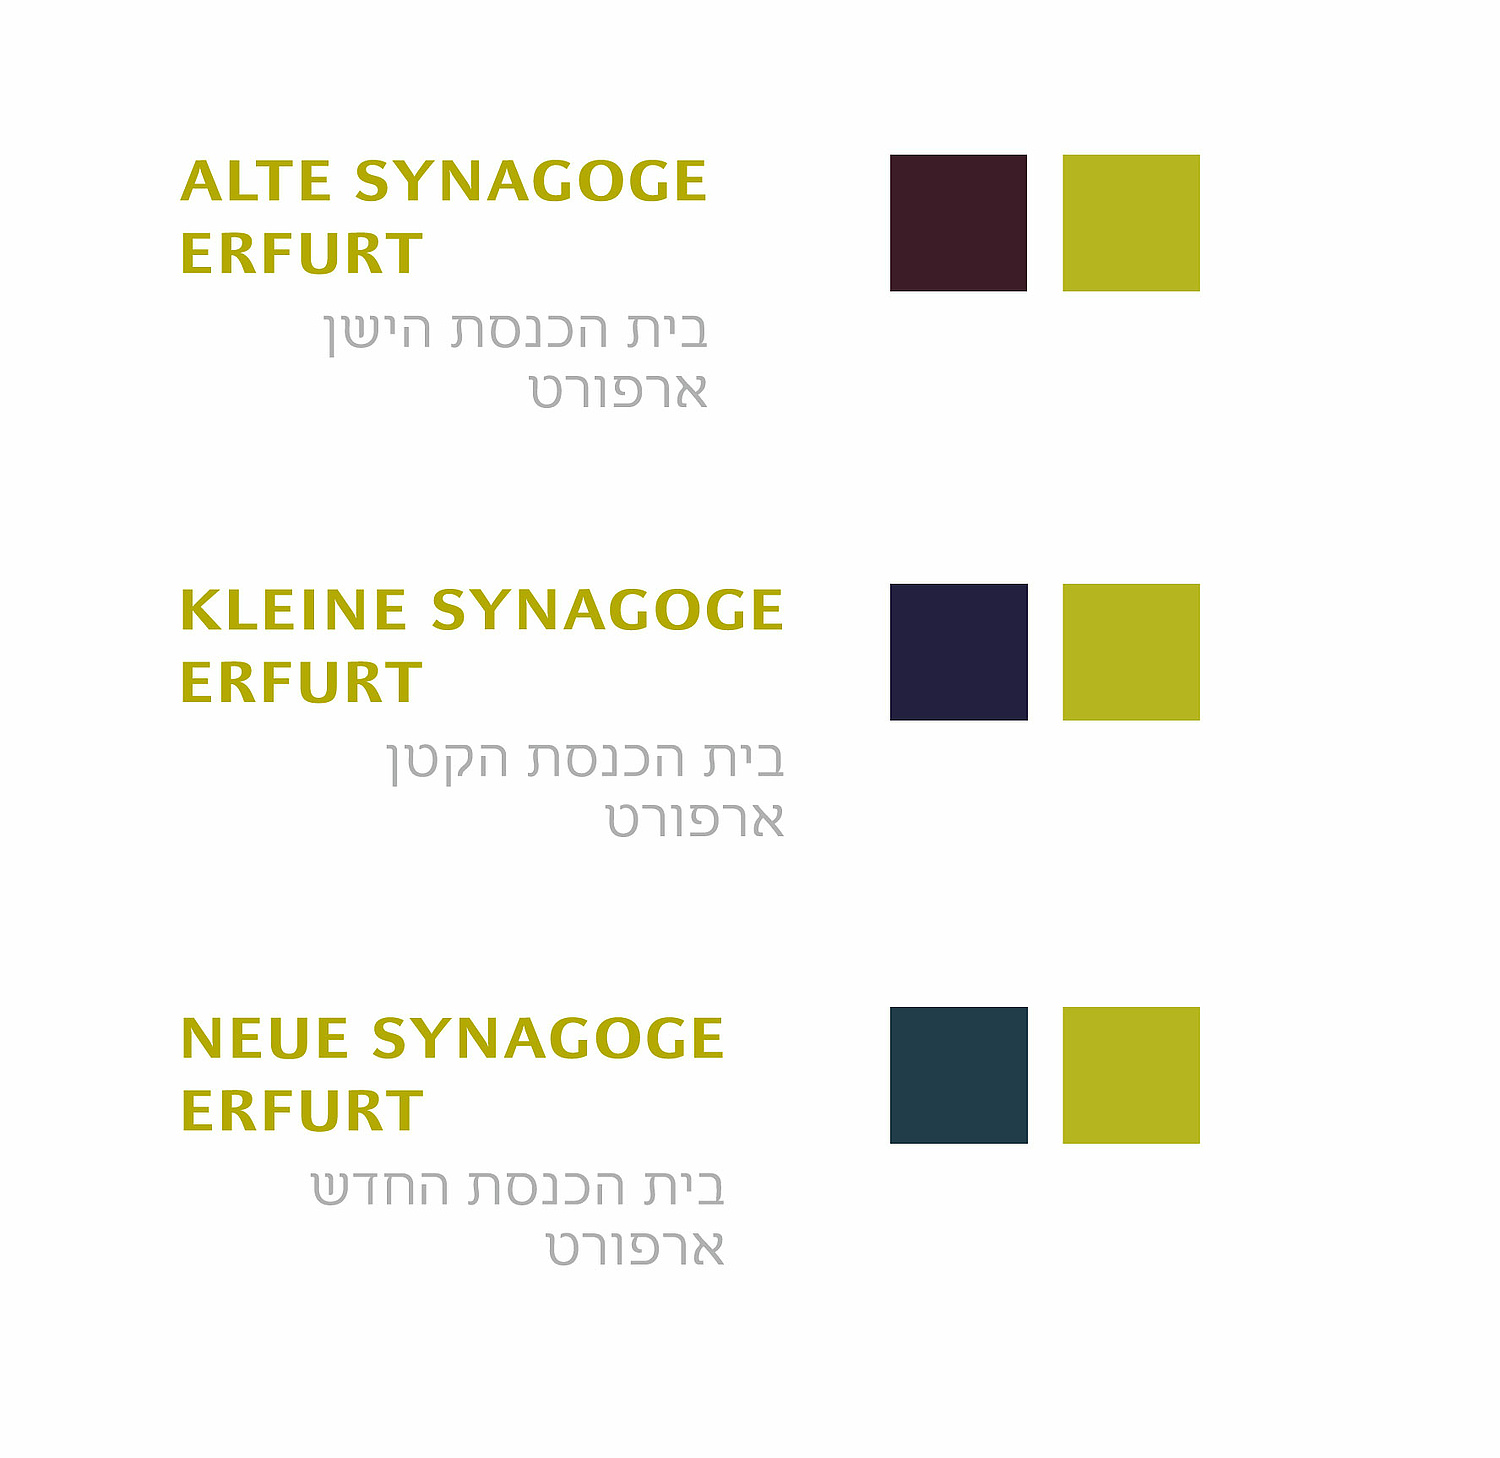 Das Bild zeigt die Wortmarken und Farbwerte der Alte Synagoge Erfurt, Kleine Synagoge Erfurt, Neue Synagoge Erfurt. (für das Netzwerk Jüdisches Leben, Erfurt) (© Papenfuss | Atelier)